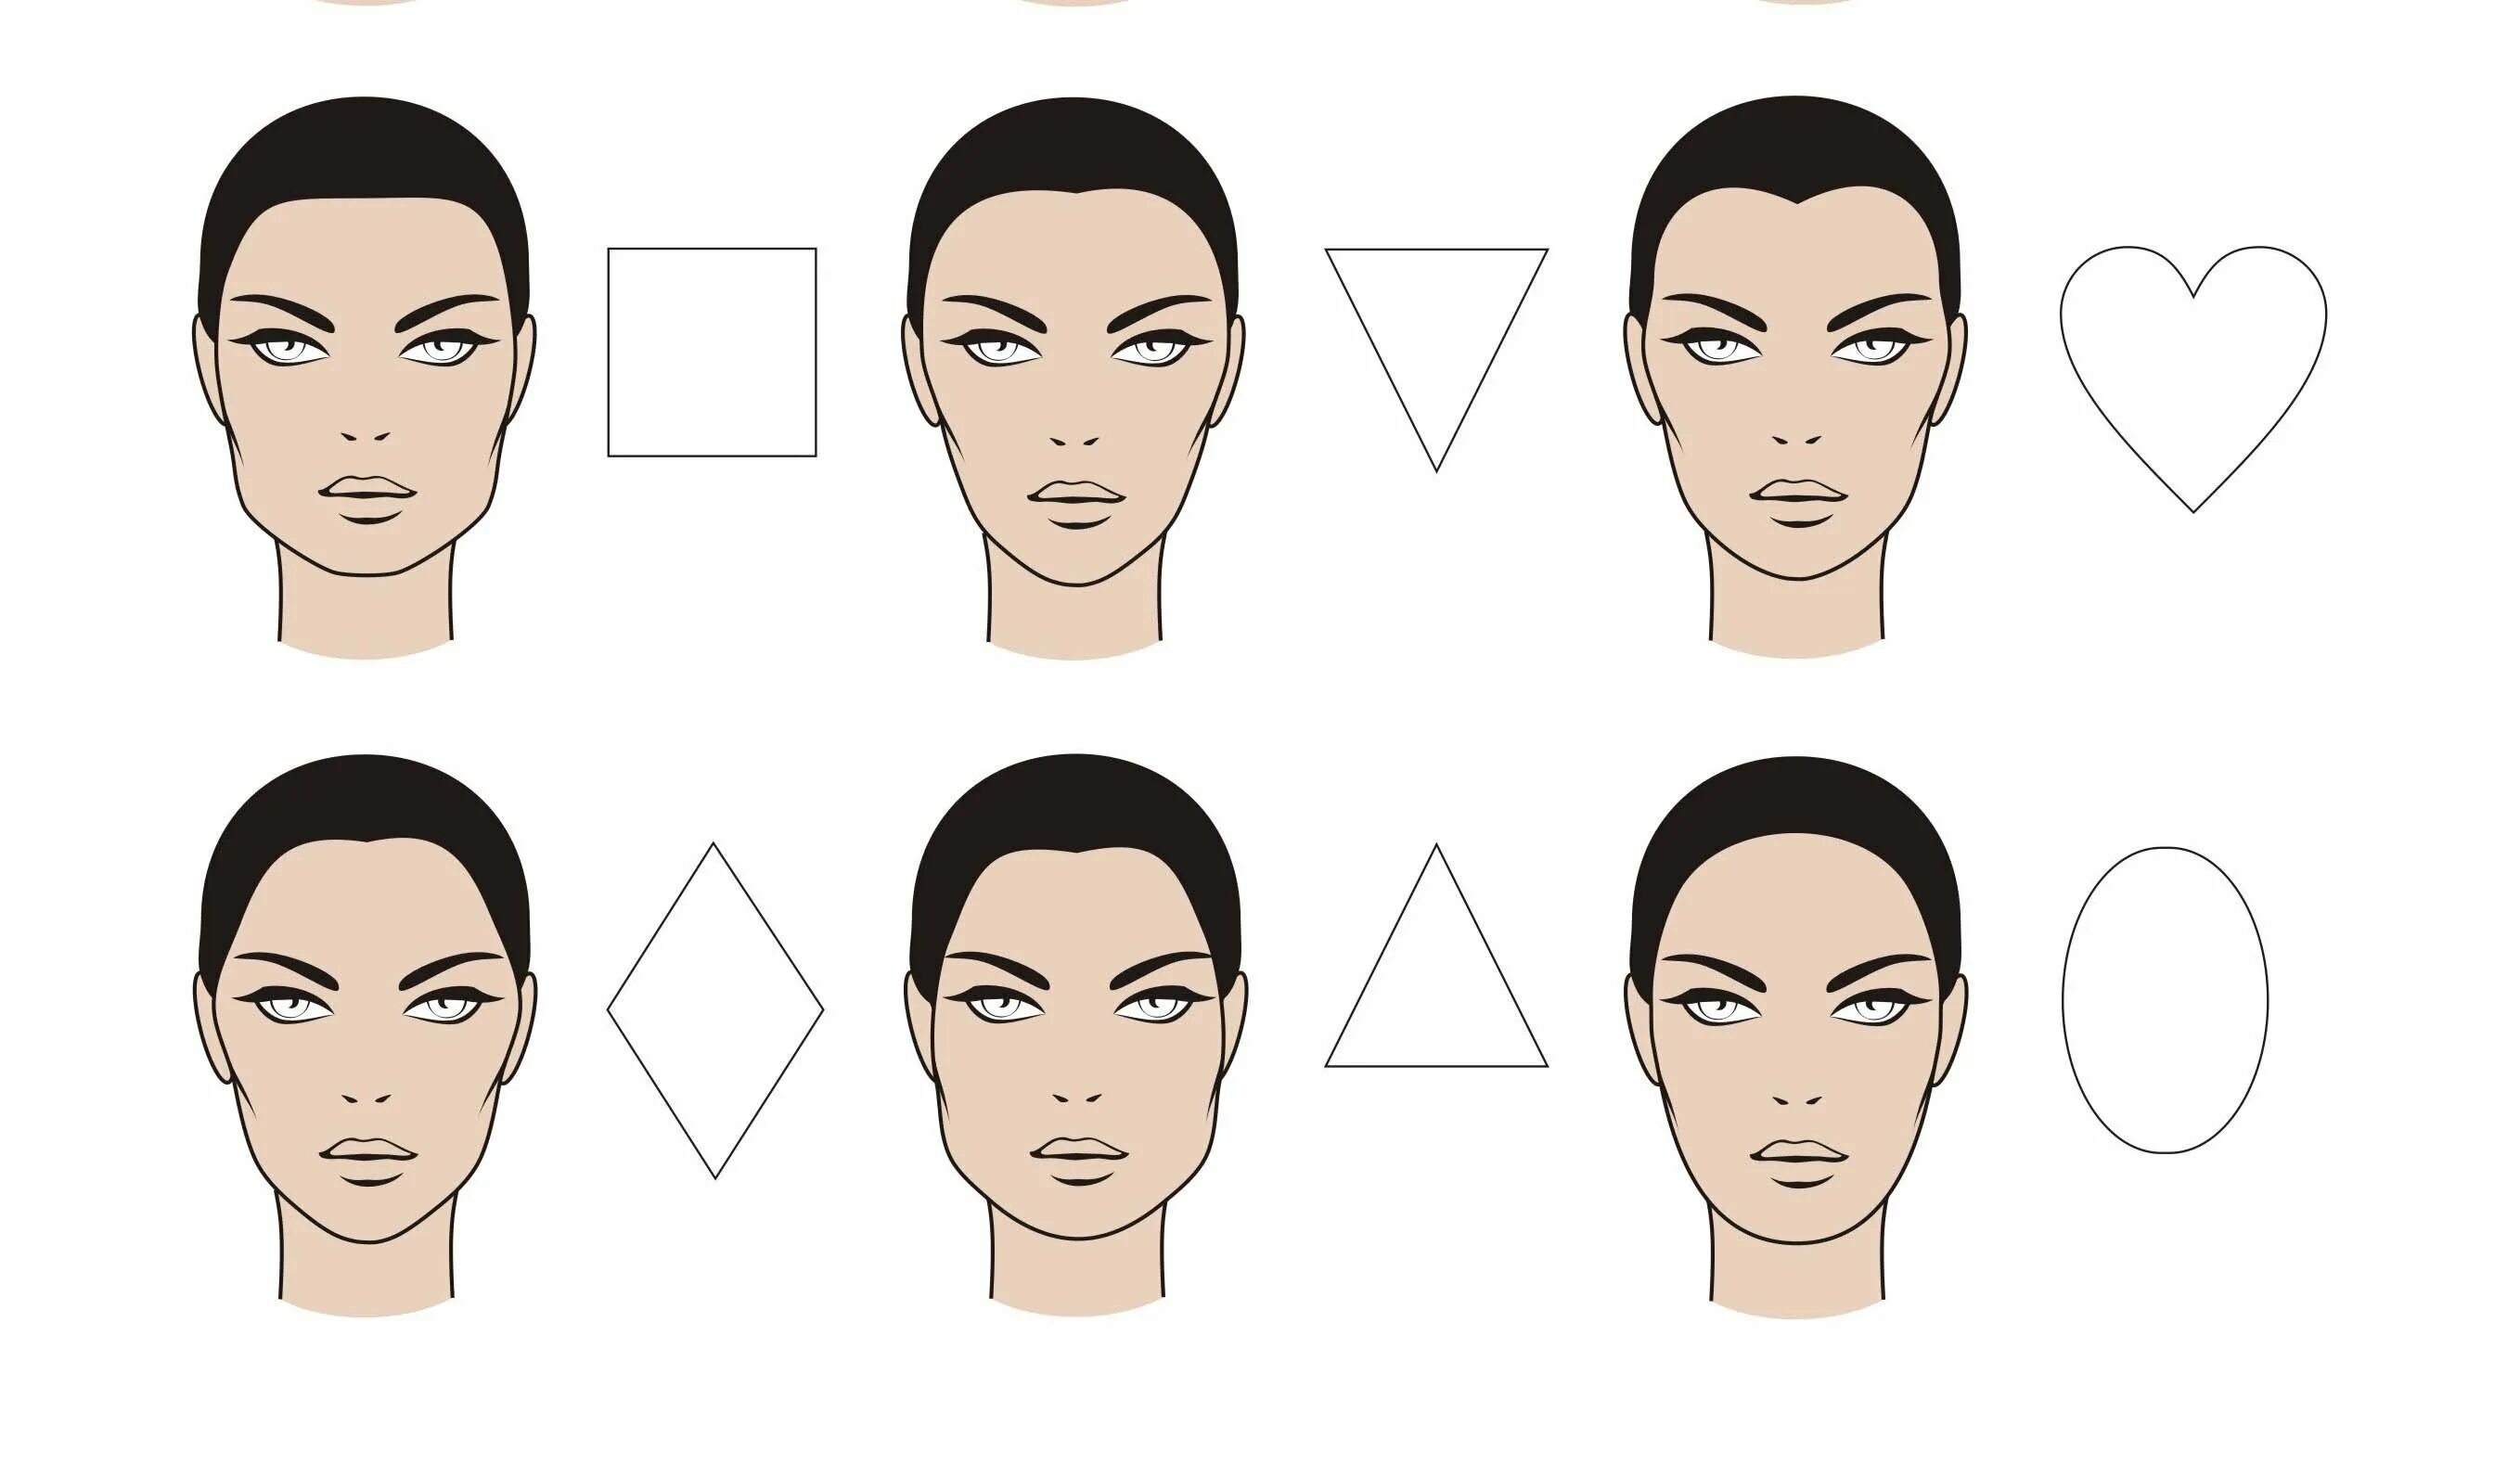 Округлая форма головы. Формы лица. Формы лица схема. Овальная форма лица. Типы лица и прически.